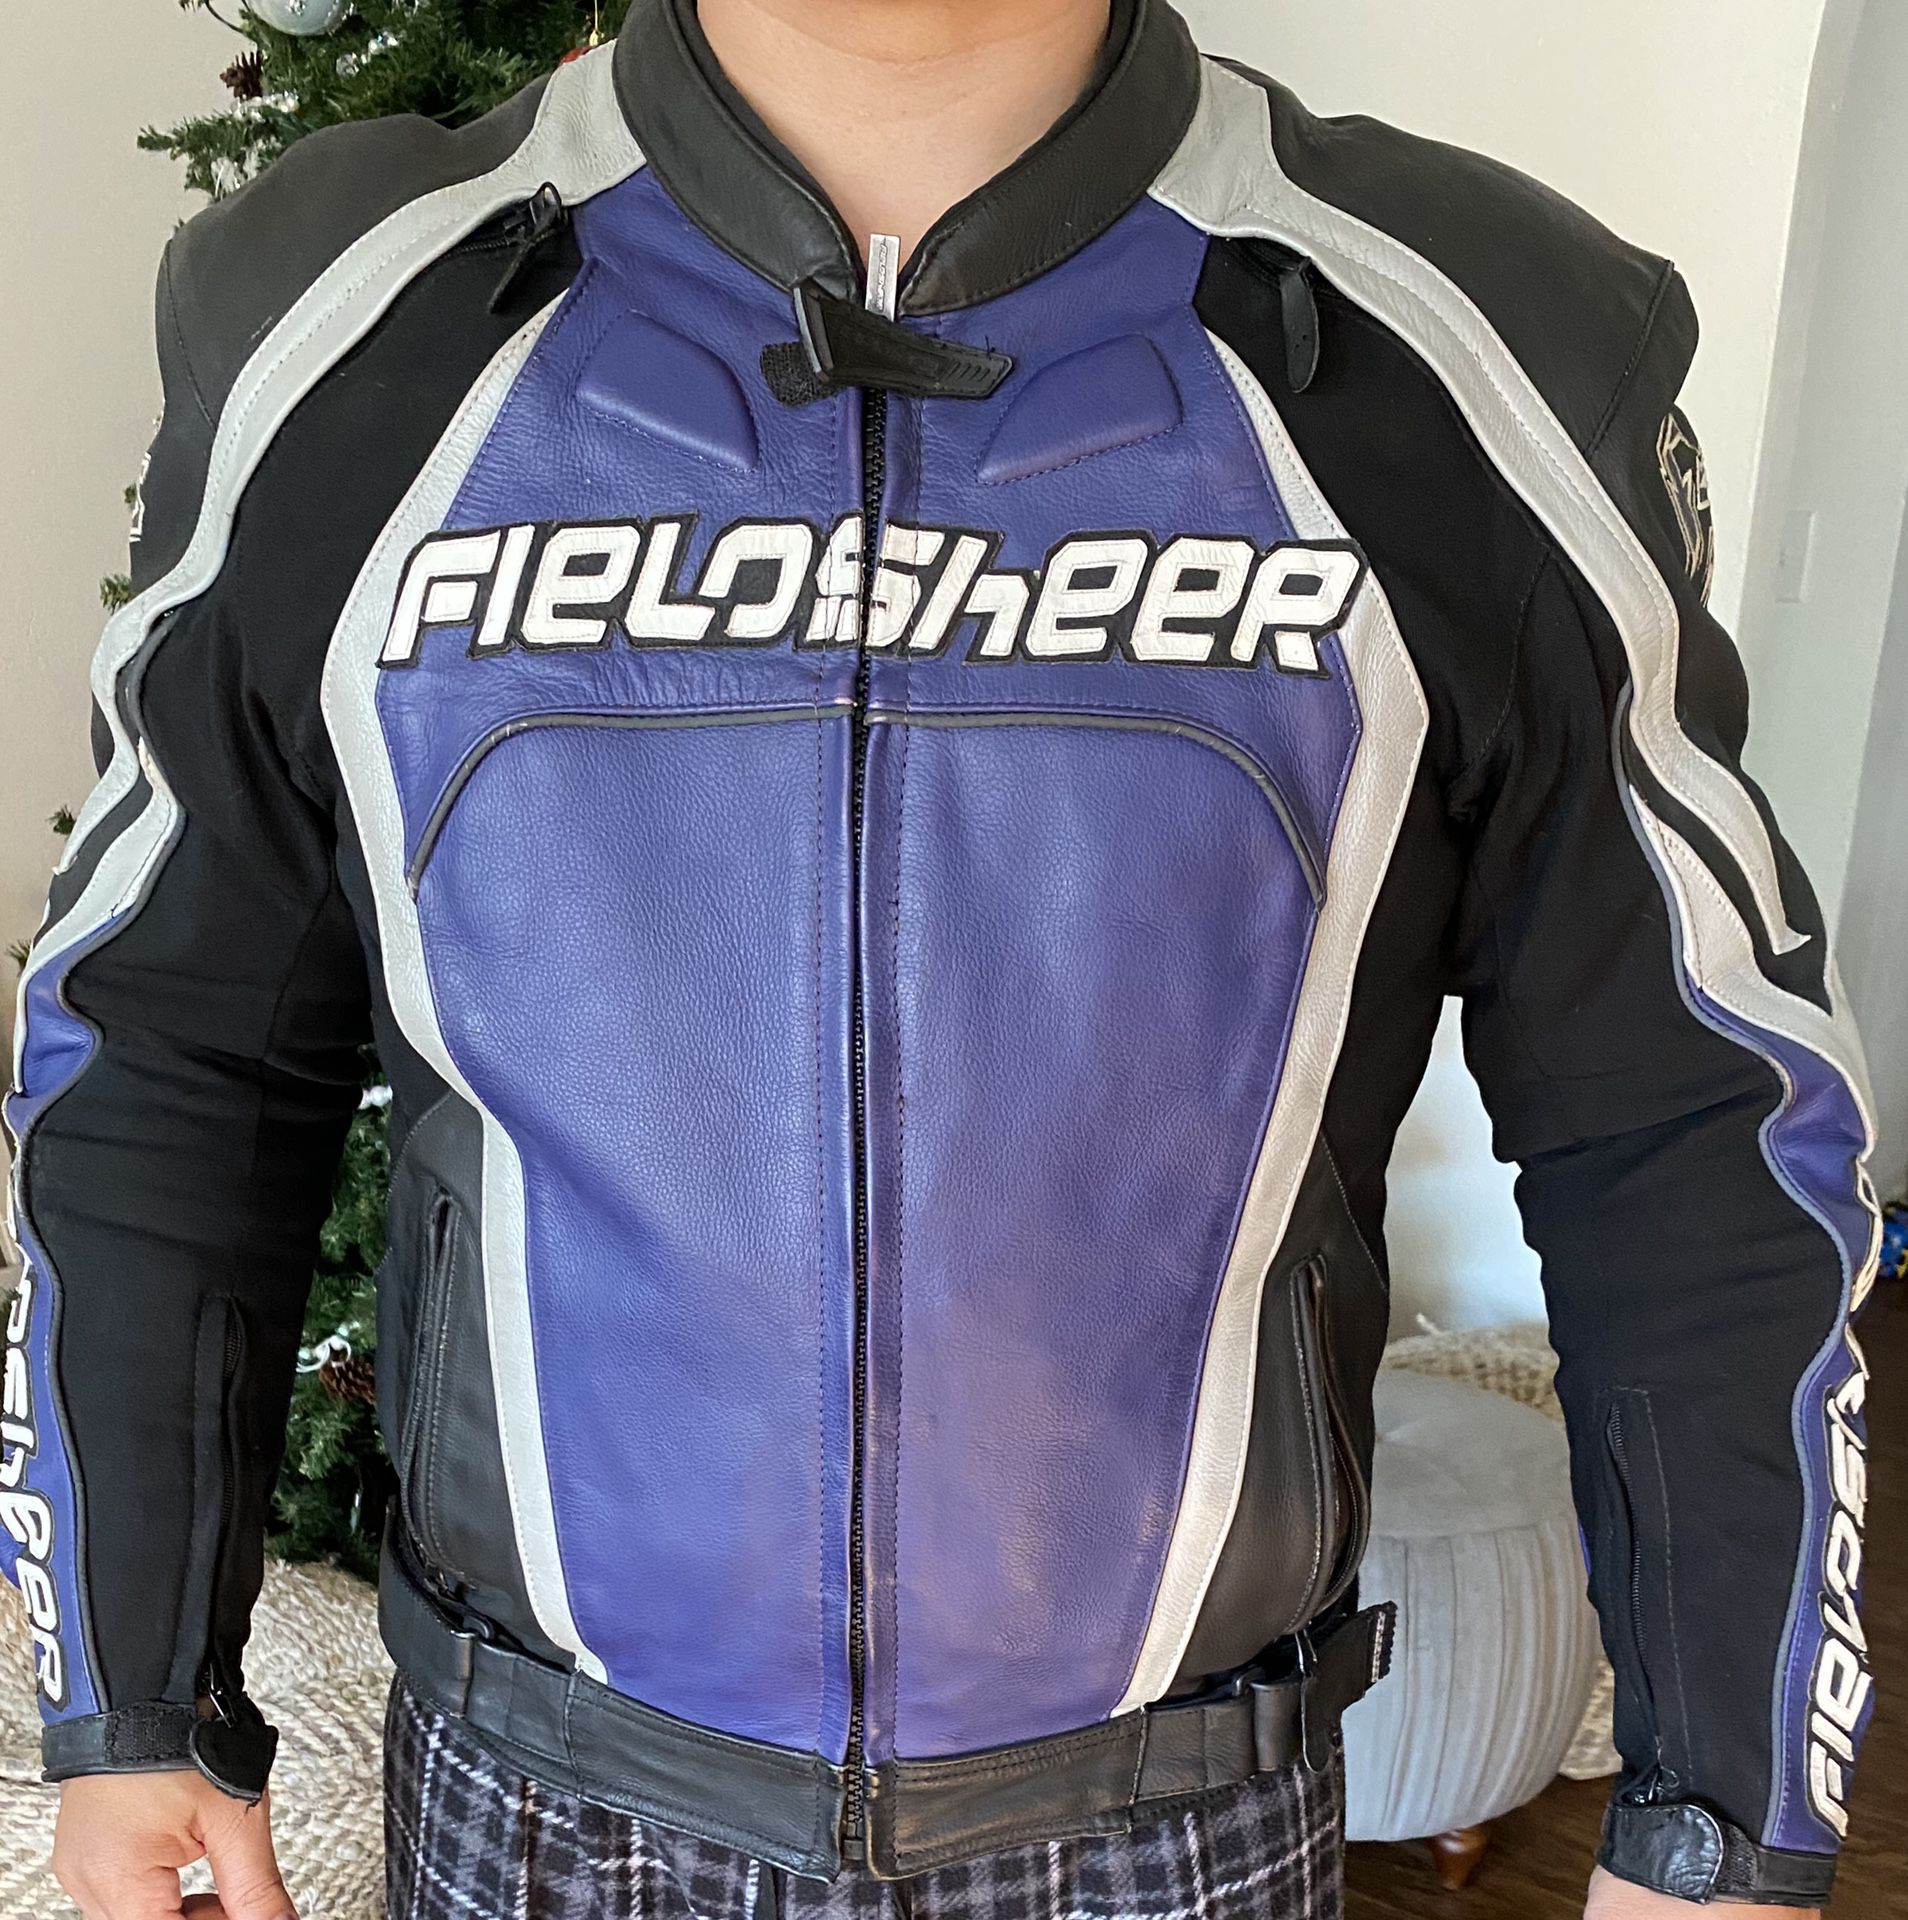 Fieldsheer Motorcycle Racing Jacket